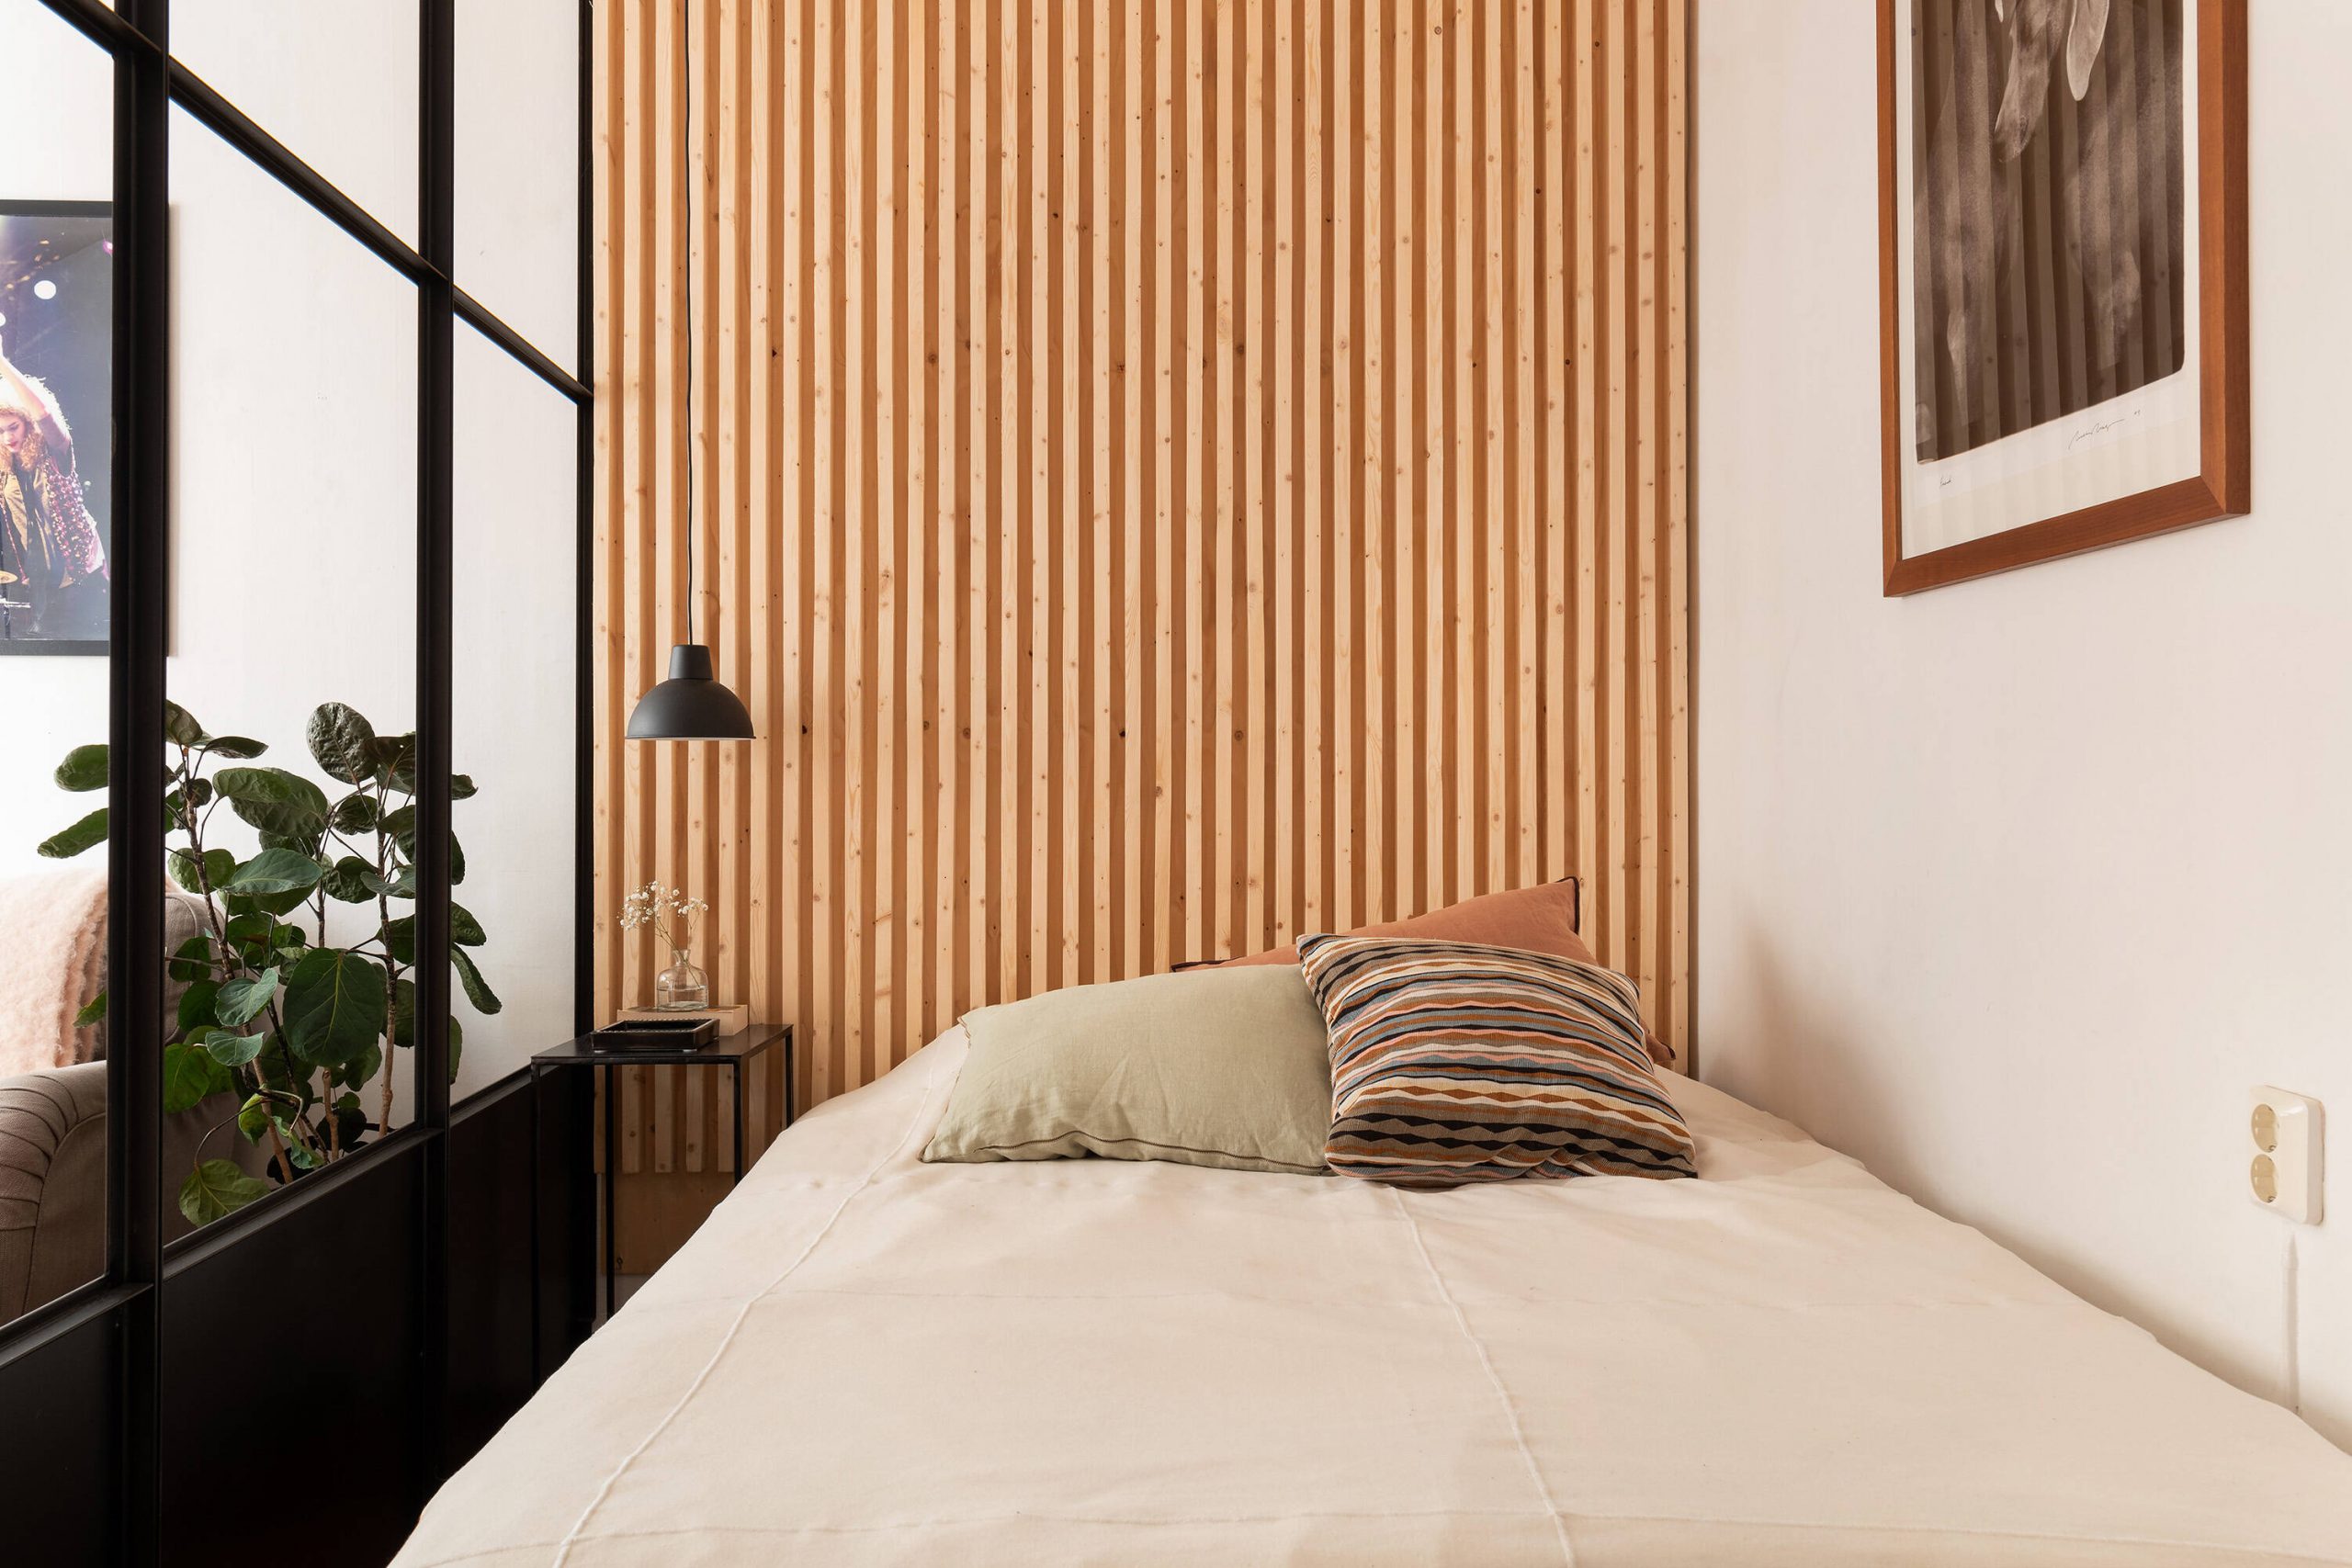 bedroom headboard decoration wooden clamp